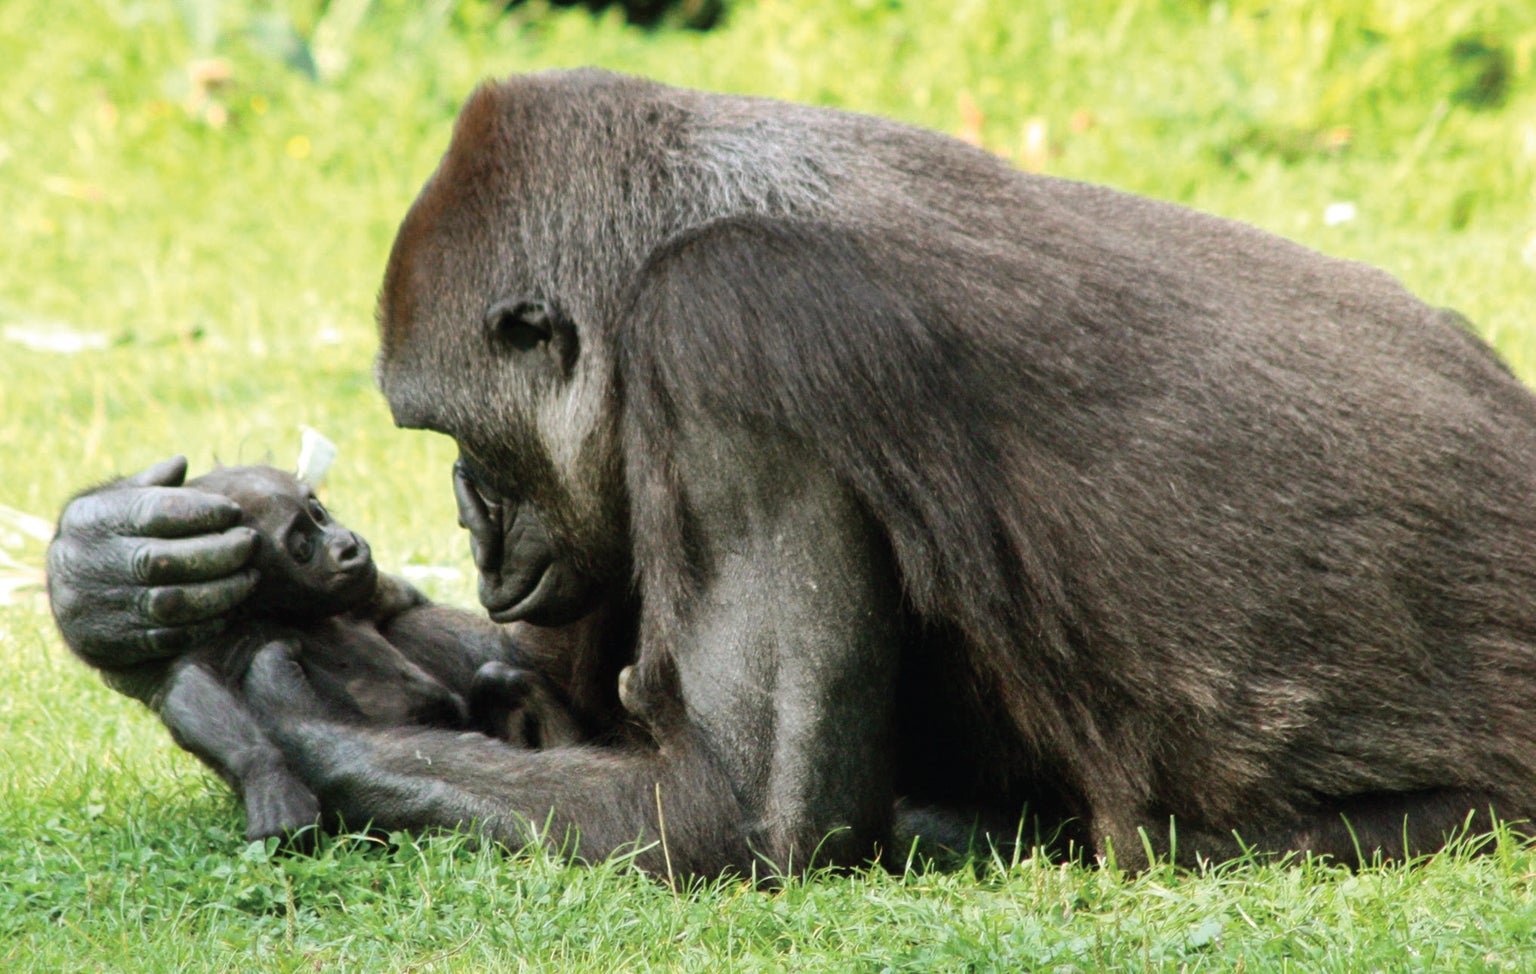 المشاعر عند الرئيسيات تتحكم بالرابطة بين الأم والرضيع